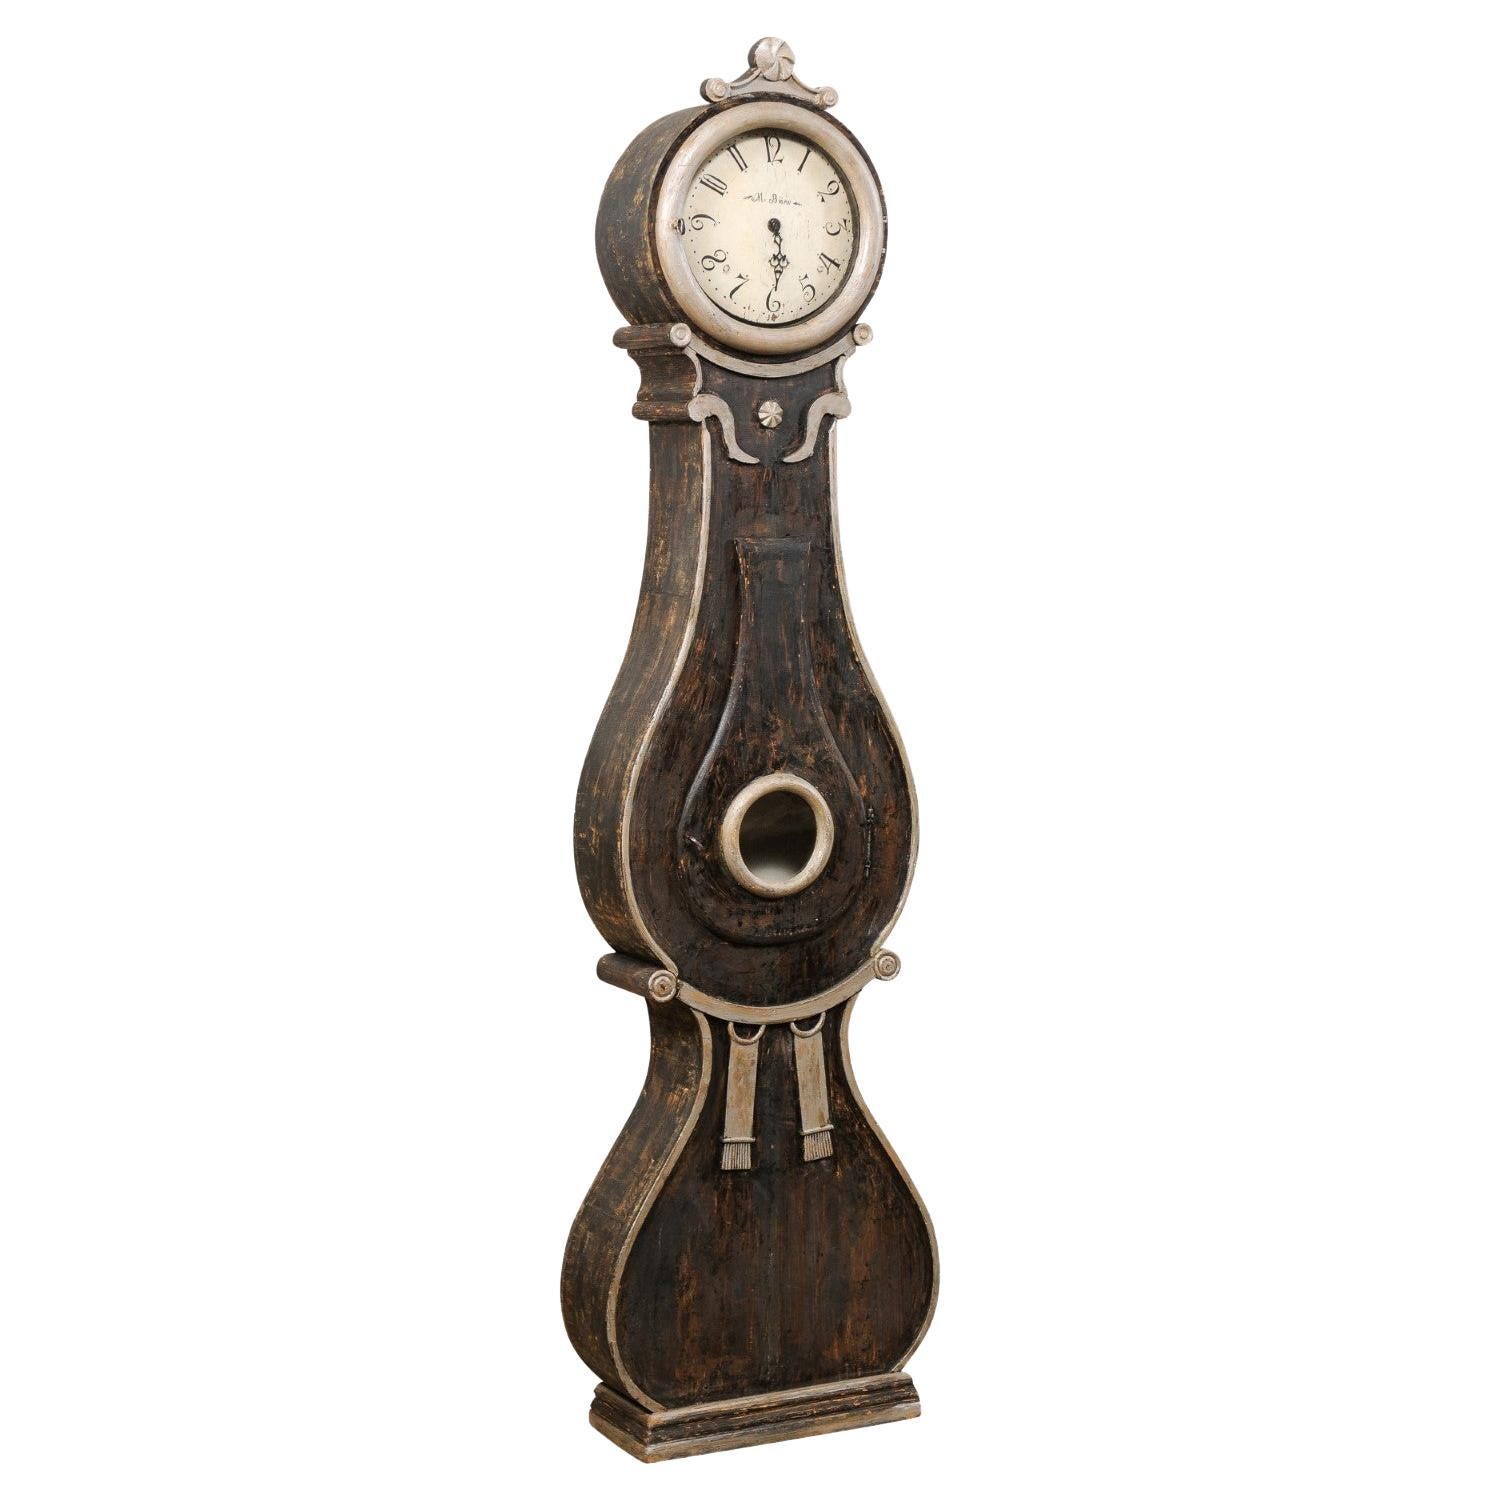 Horloge de sol Fryksdahl suédoise du début du 19e siècle avec visage et mouvement en métal d'origine